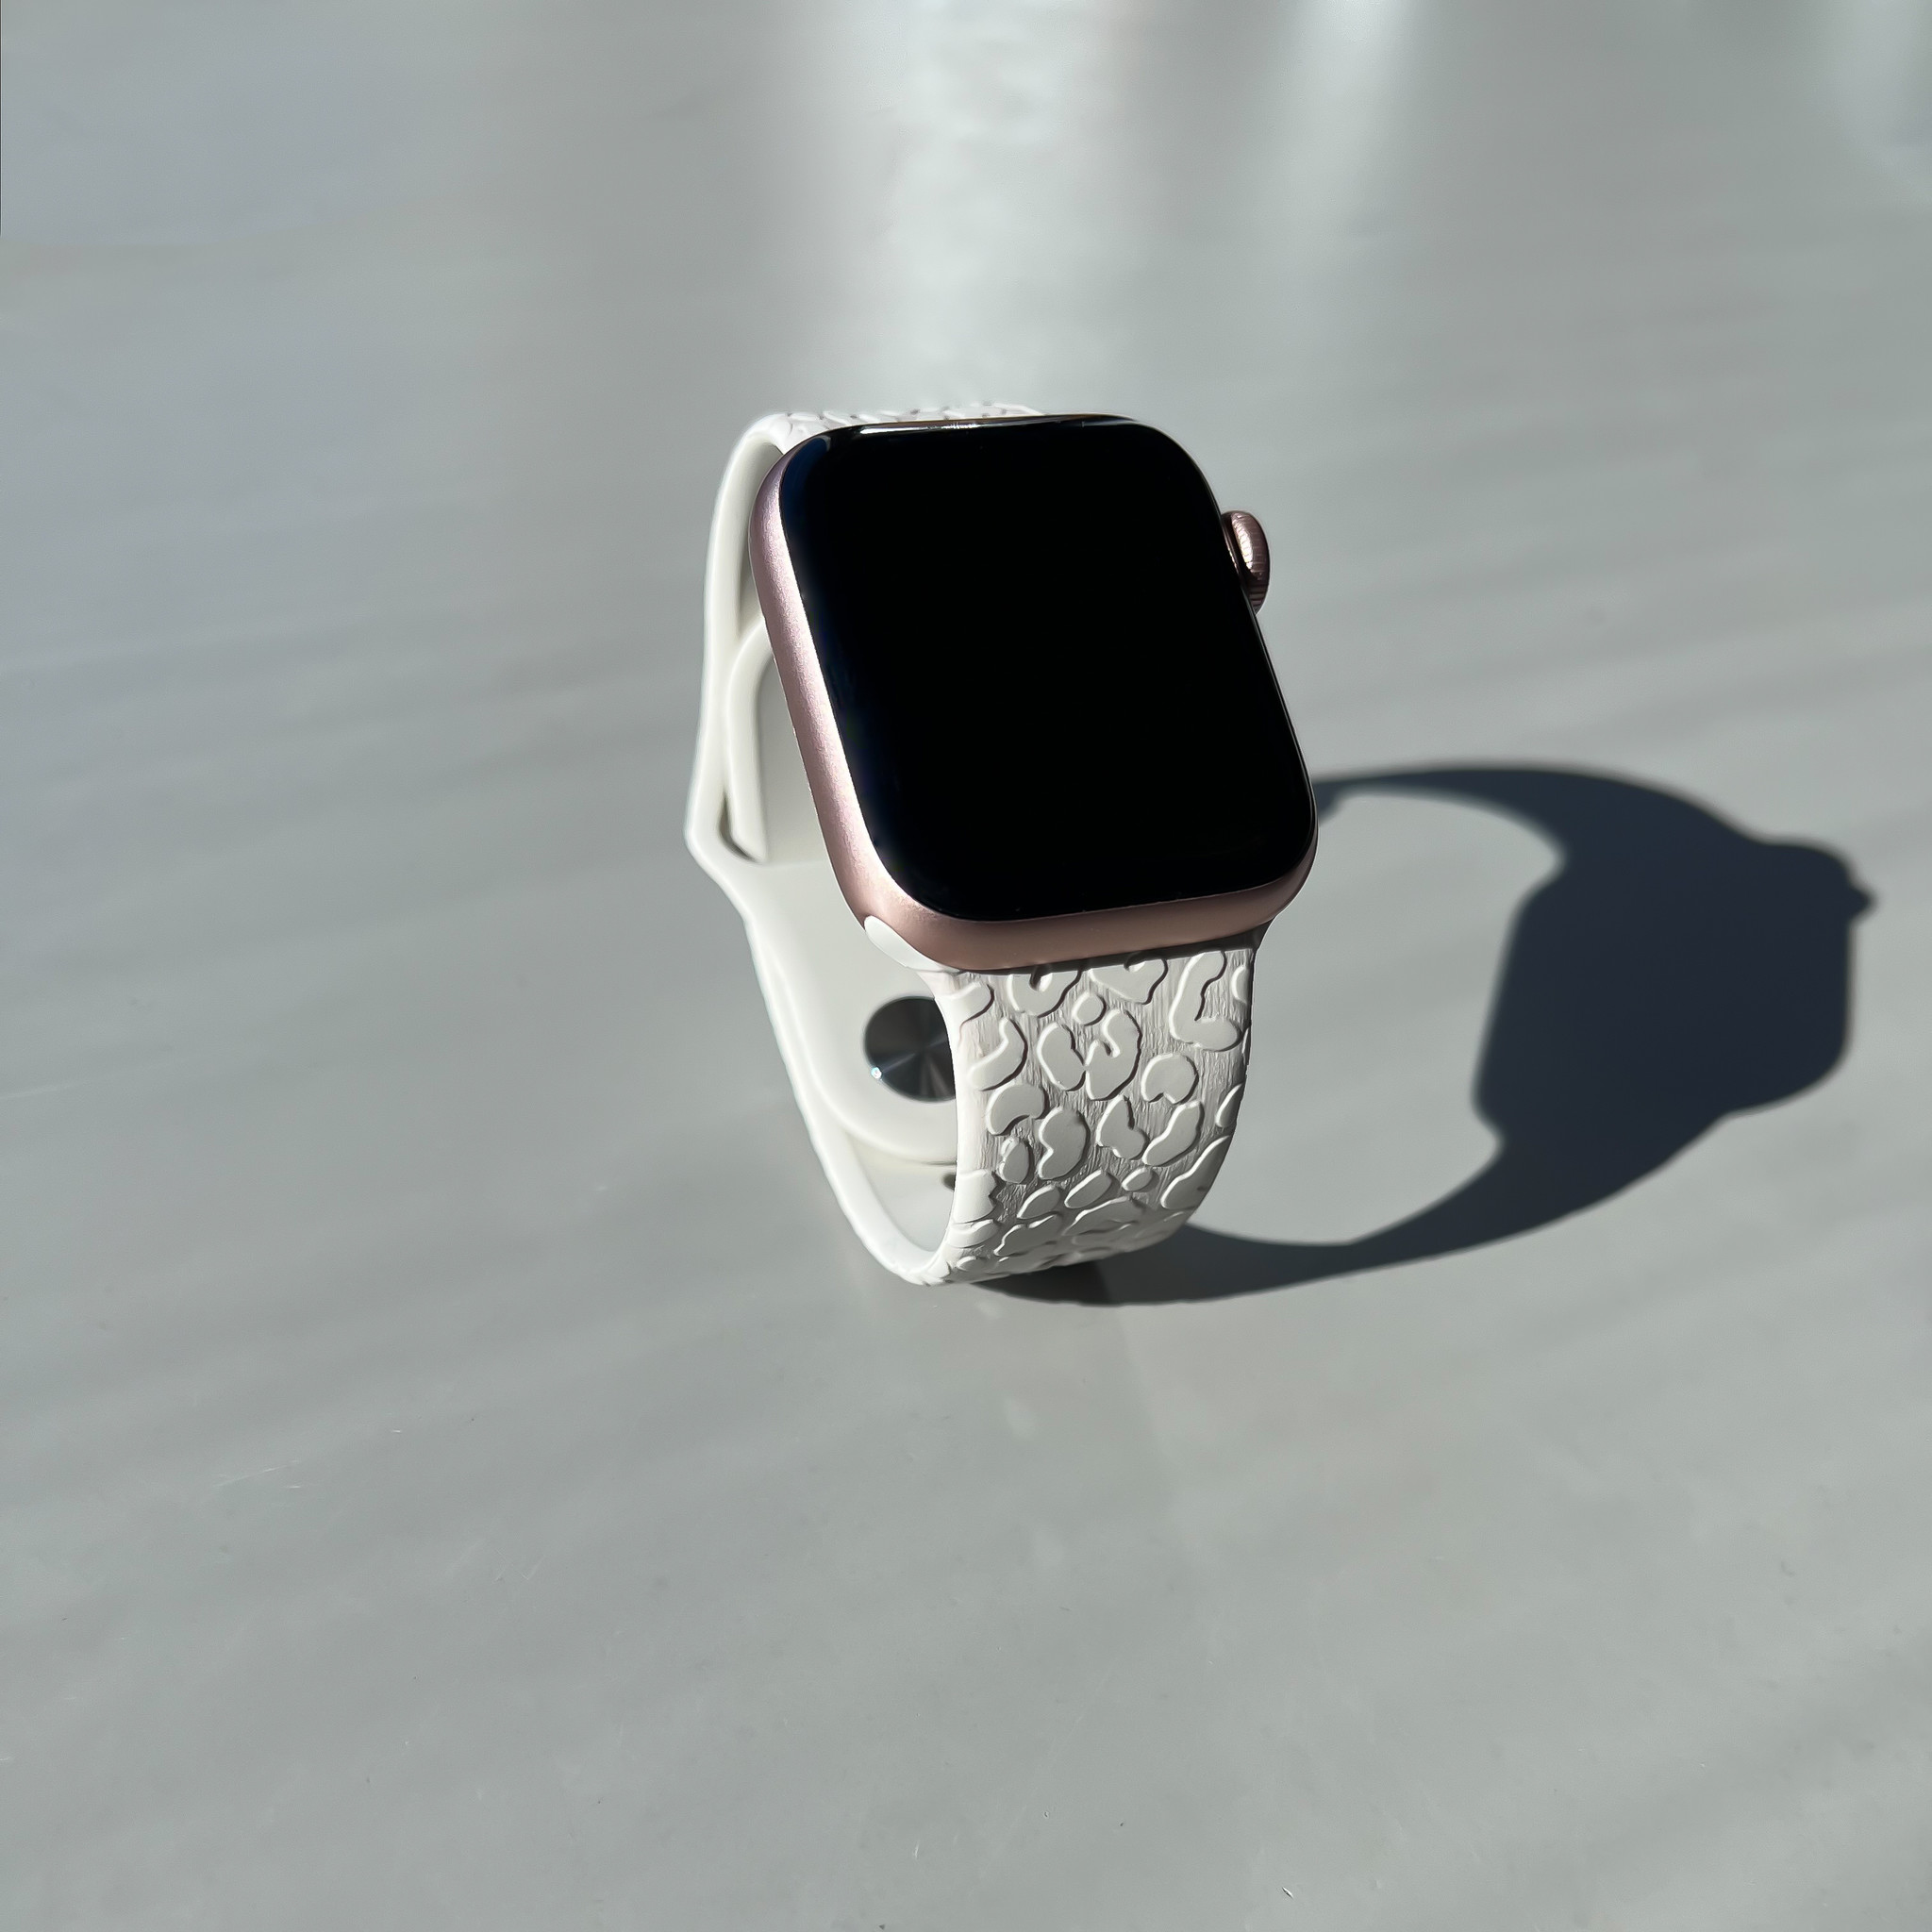 Apple Watch druck Sportarmband - Leopard grau